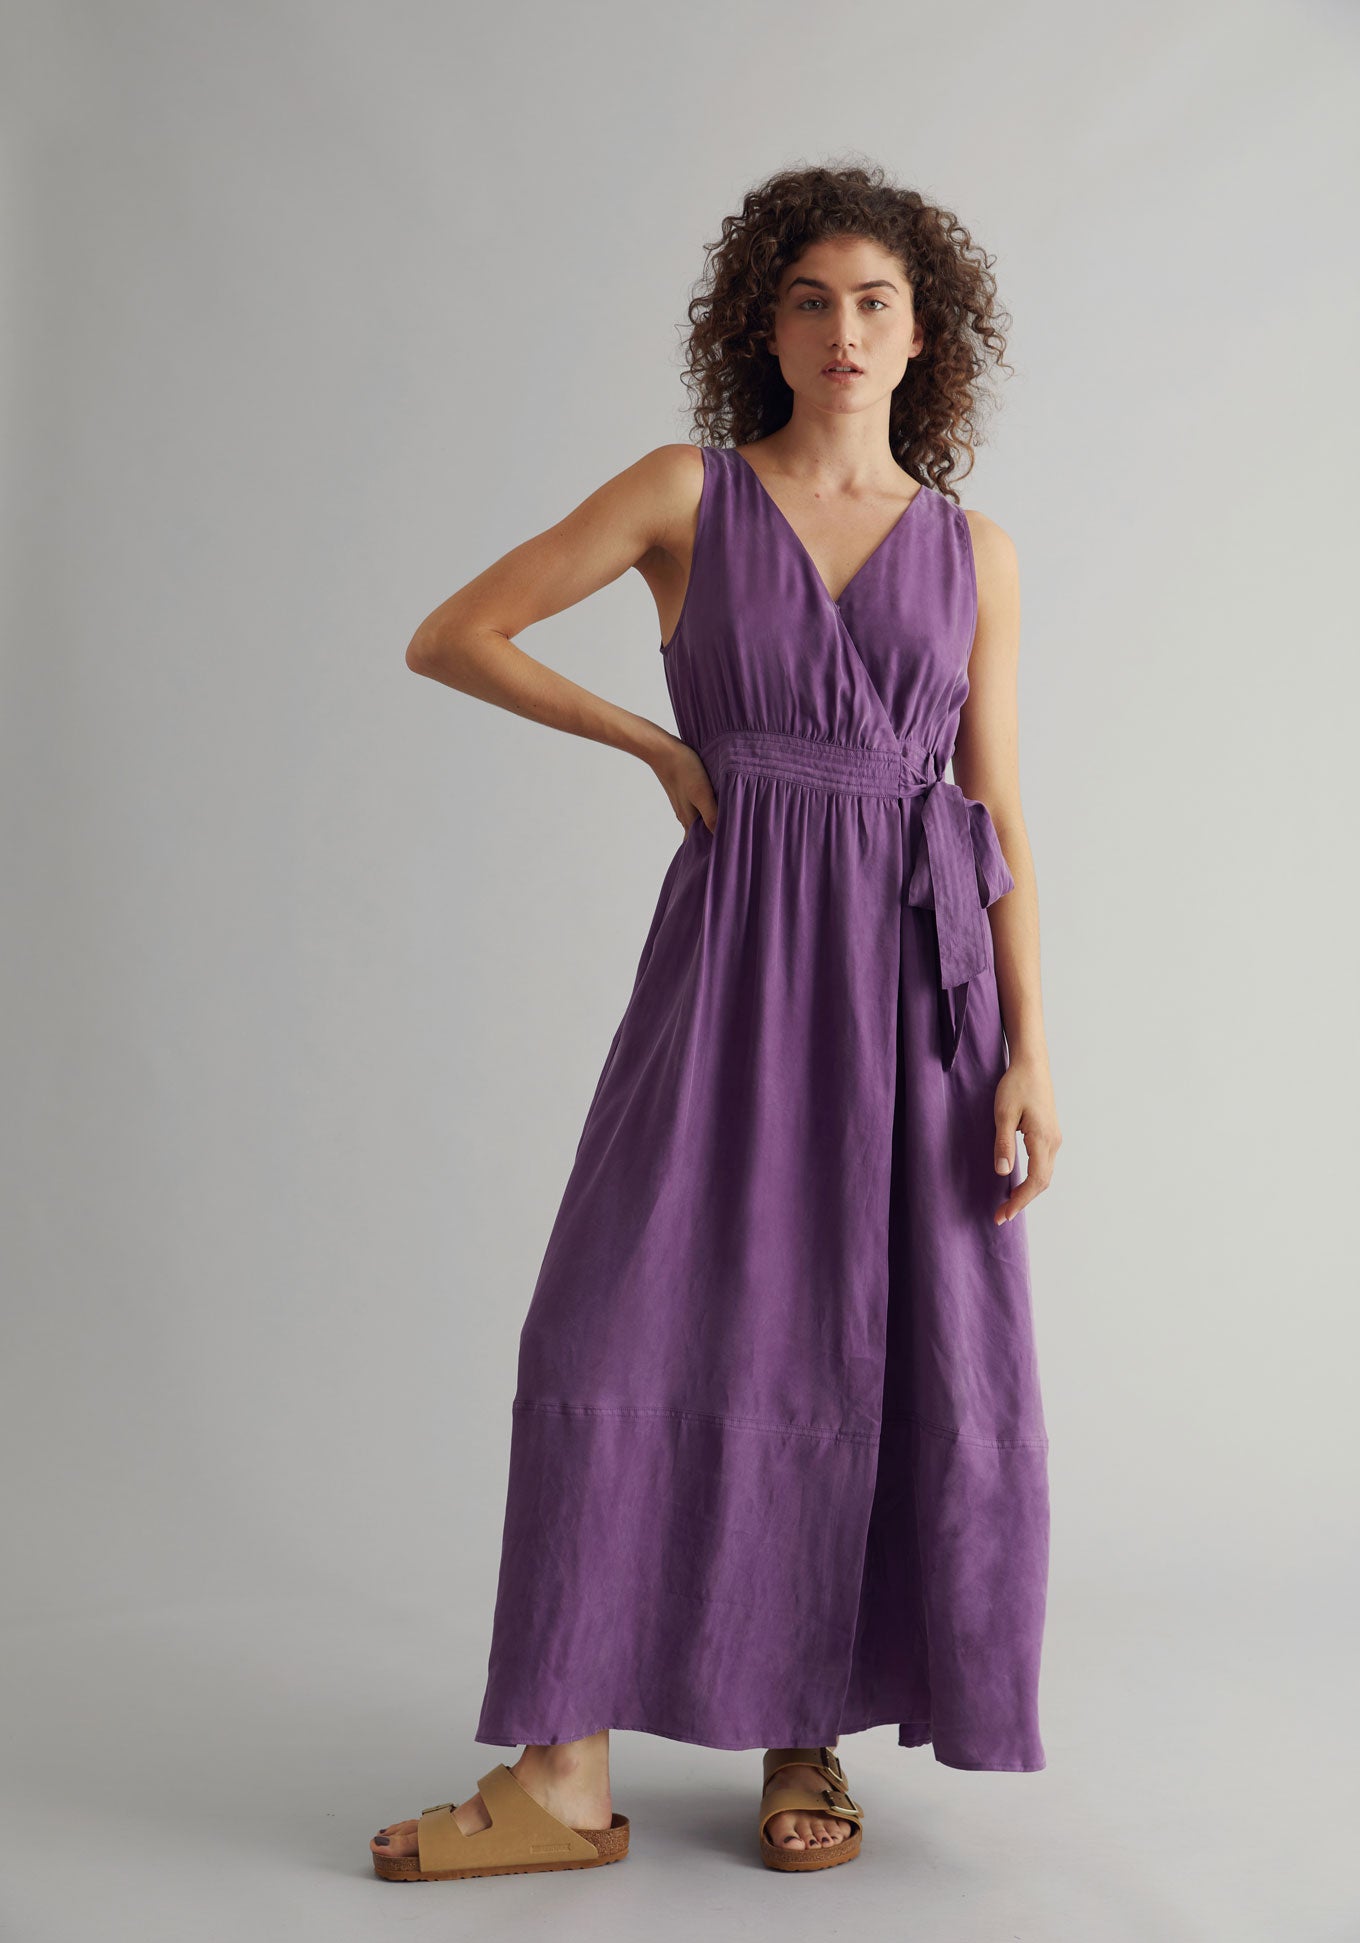 MIKA Dress - Cupro Viscose Purple, SIZE 1 / UK 8 / EUR 36